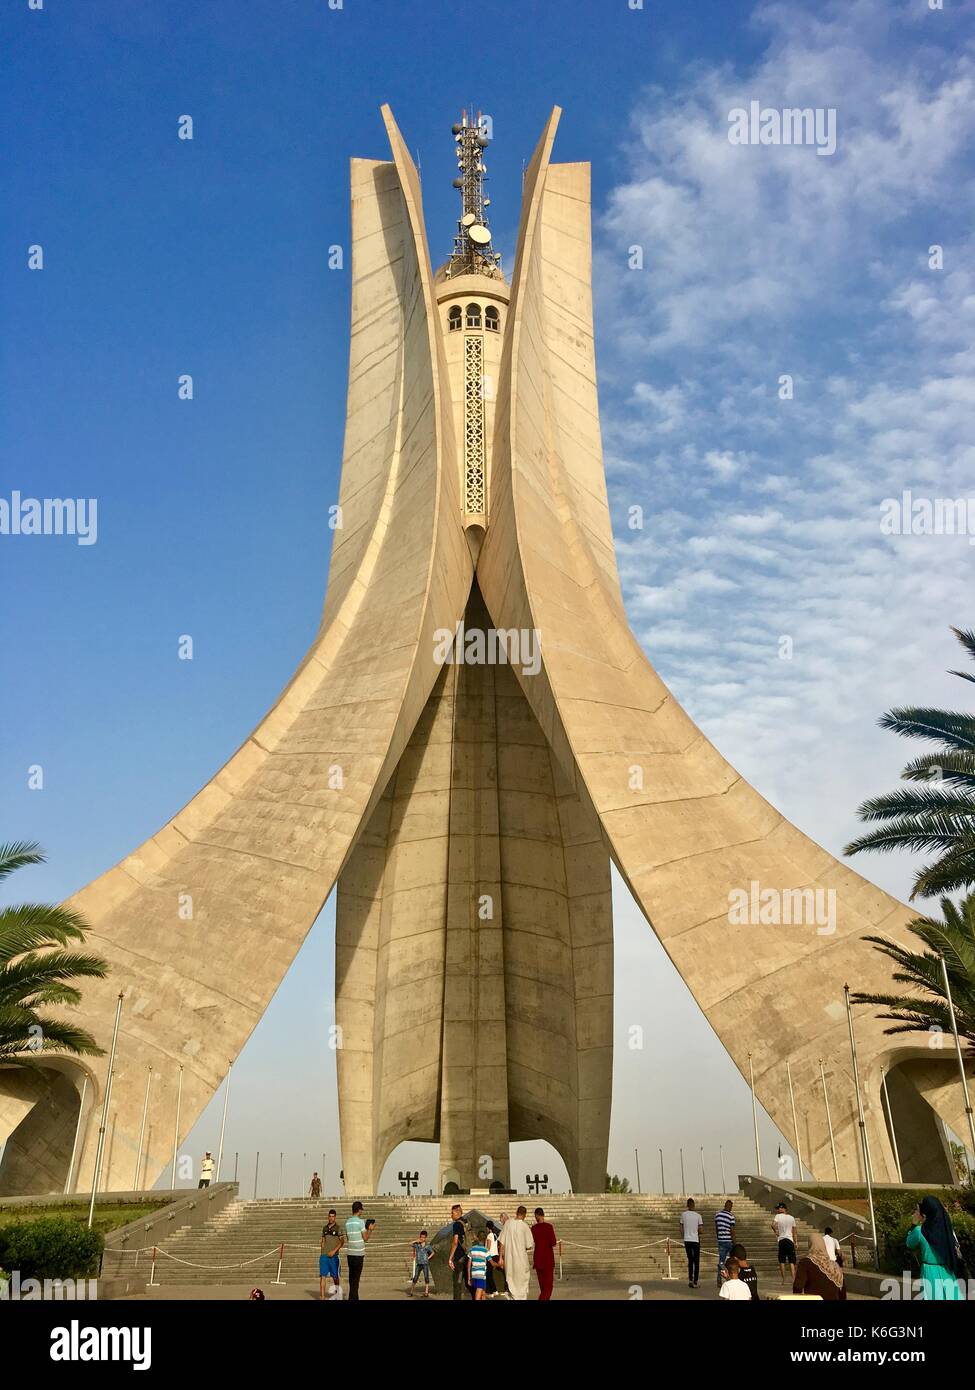 Le maqam echahid monument. Ouvert en 1982 pour le 20e anniversaire de l'indépendance de l'Algérie construit en forme de trois feuilles de palmier. Banque D'Images